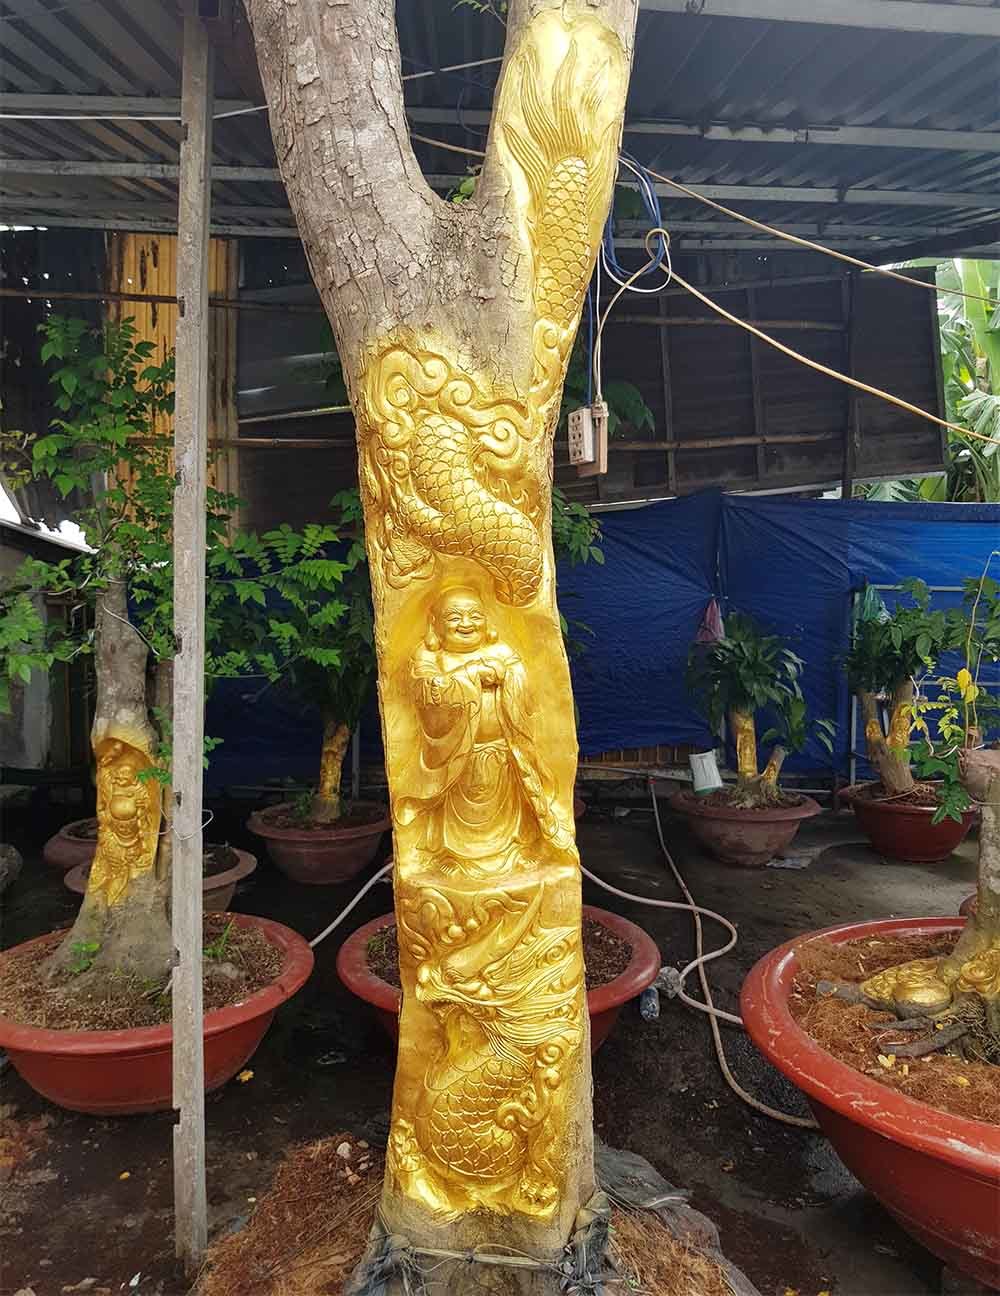 Chuyện lạ miền Tây: Quan Âm Bồ Tát cưỡi rồng vàng hiện hình trên cây khế(+video) Tuong-phat-di-lac-cuoi-rong-long-tranh-ho-dau-hien-hinh-tren-cay-khe-man-gia